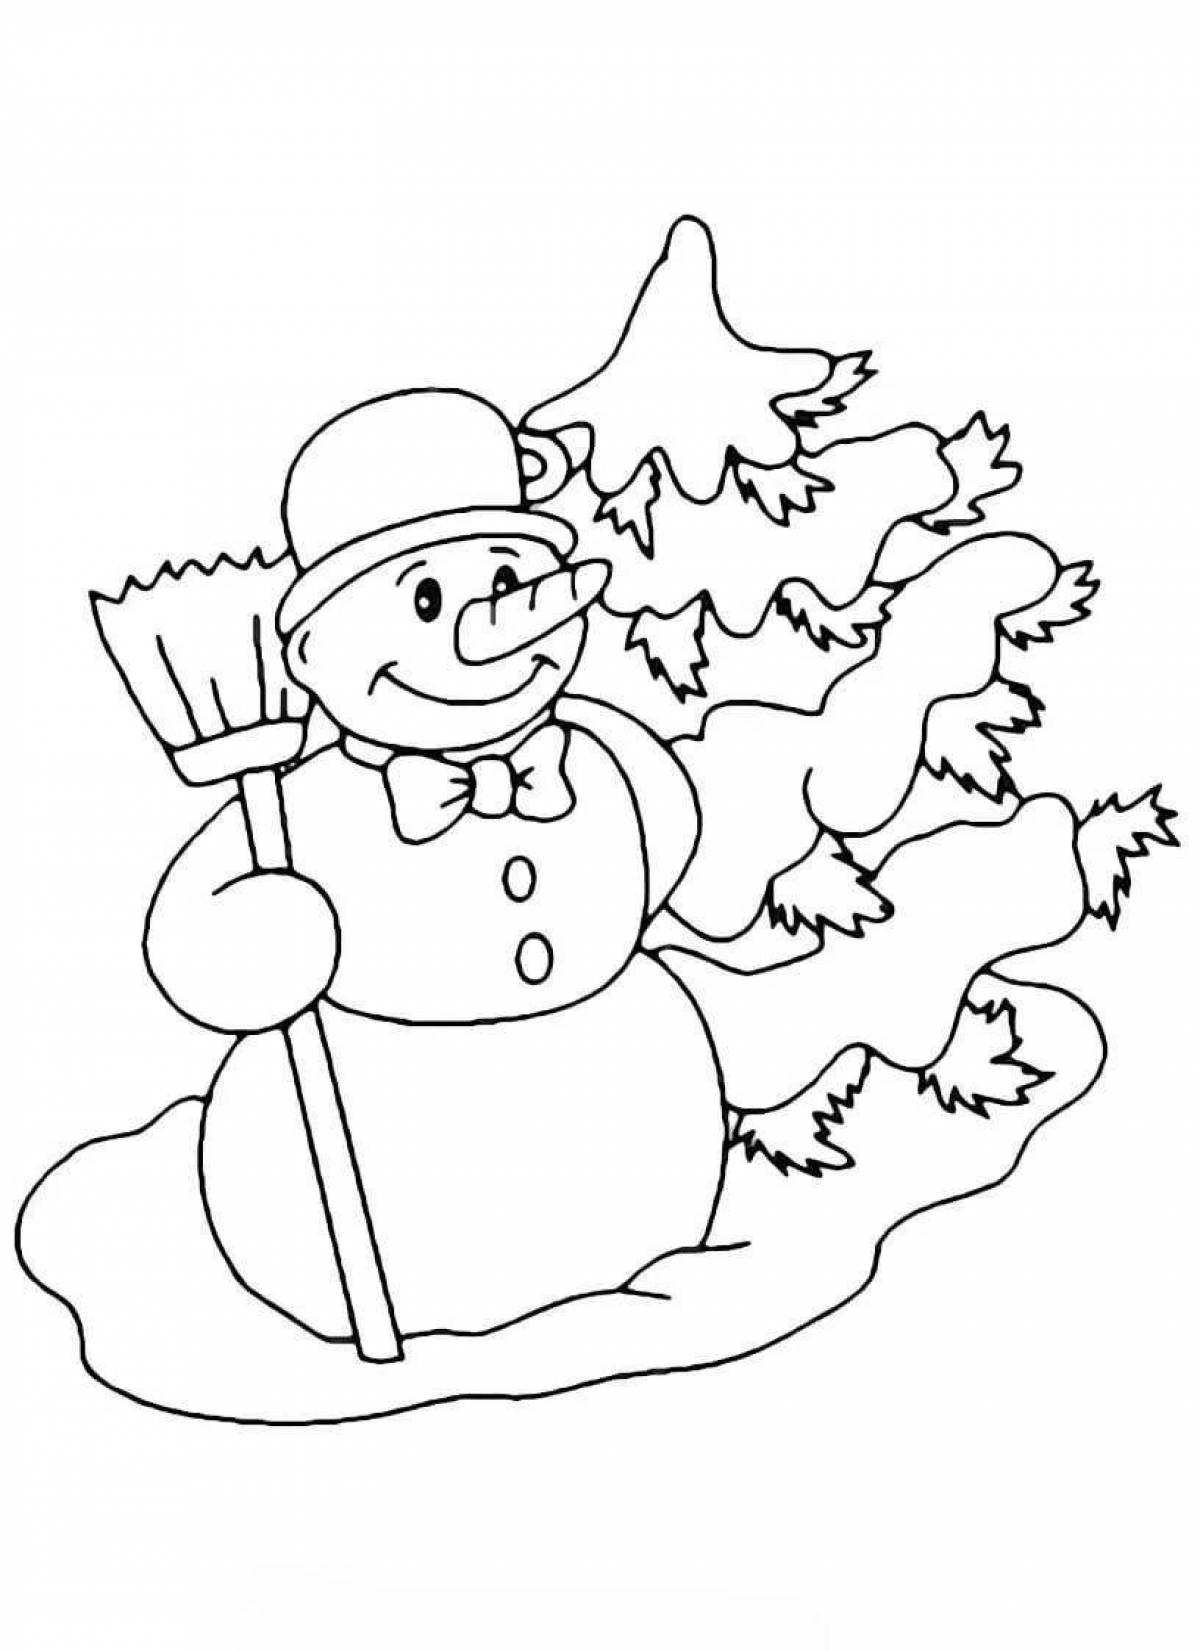 Забавная раскраска снеговик для детей 3 4